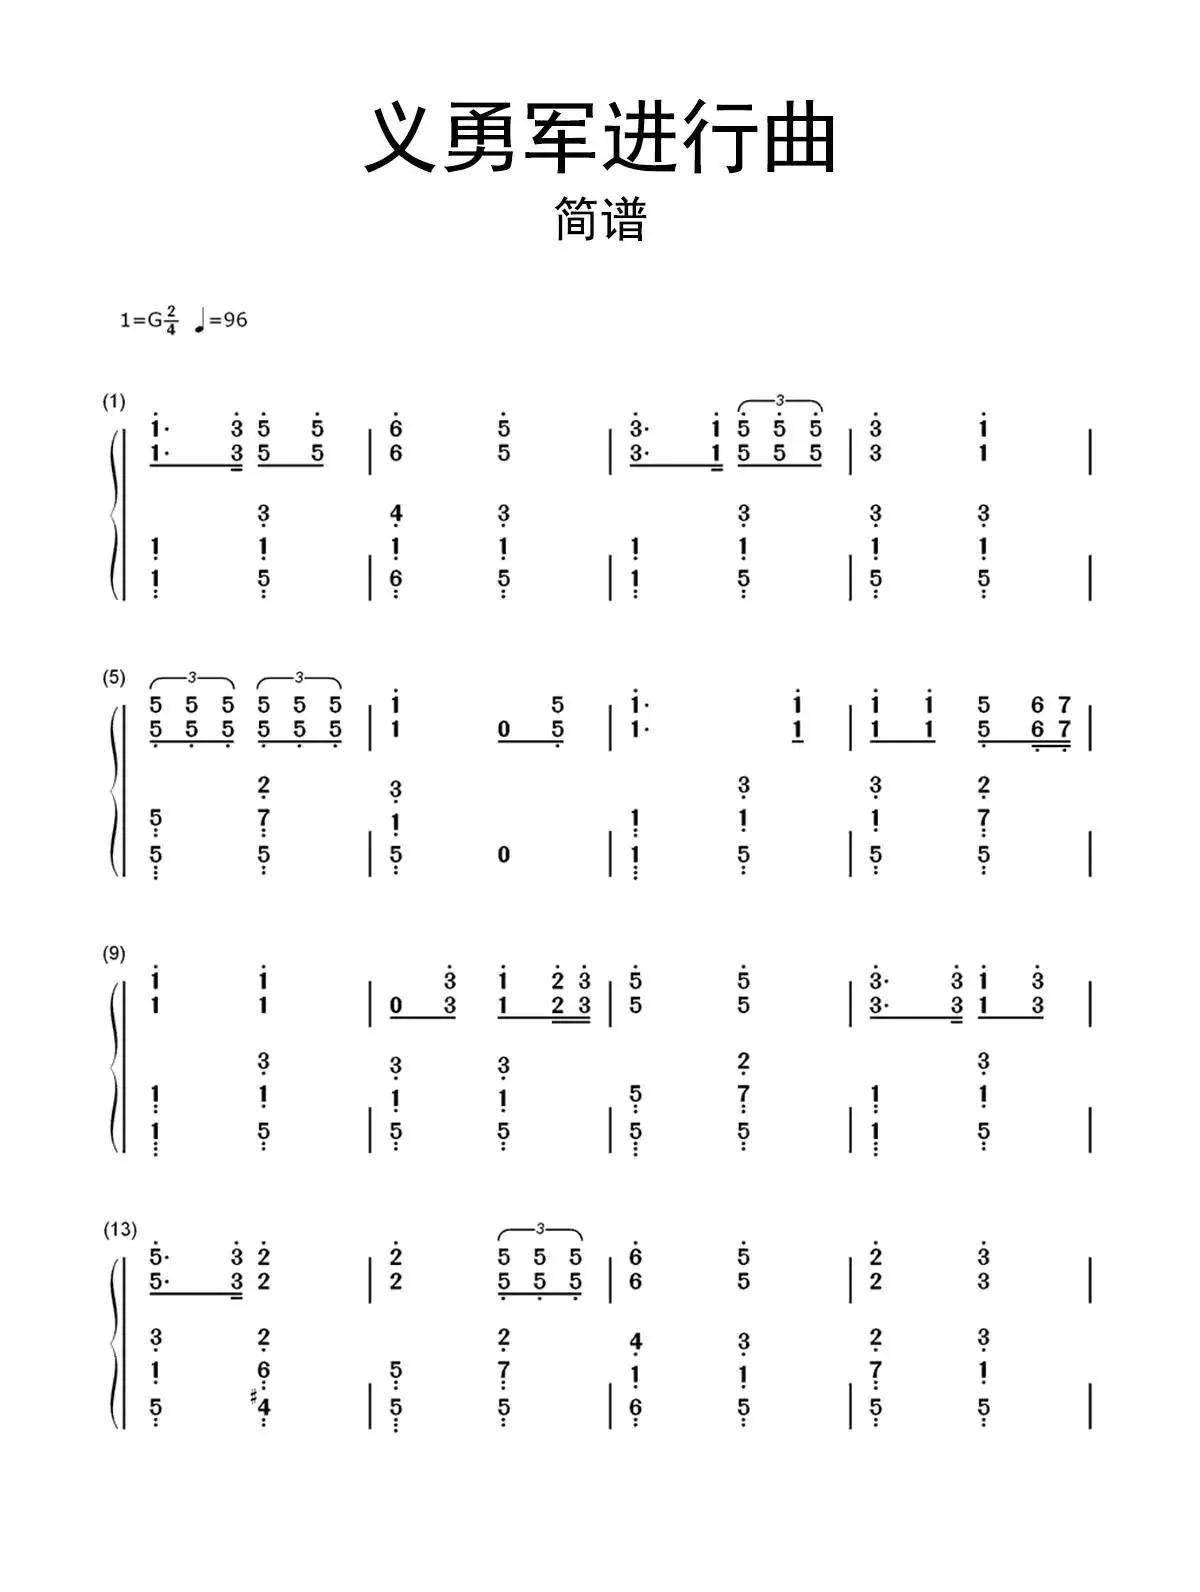 国歌口风琴乐谱图片